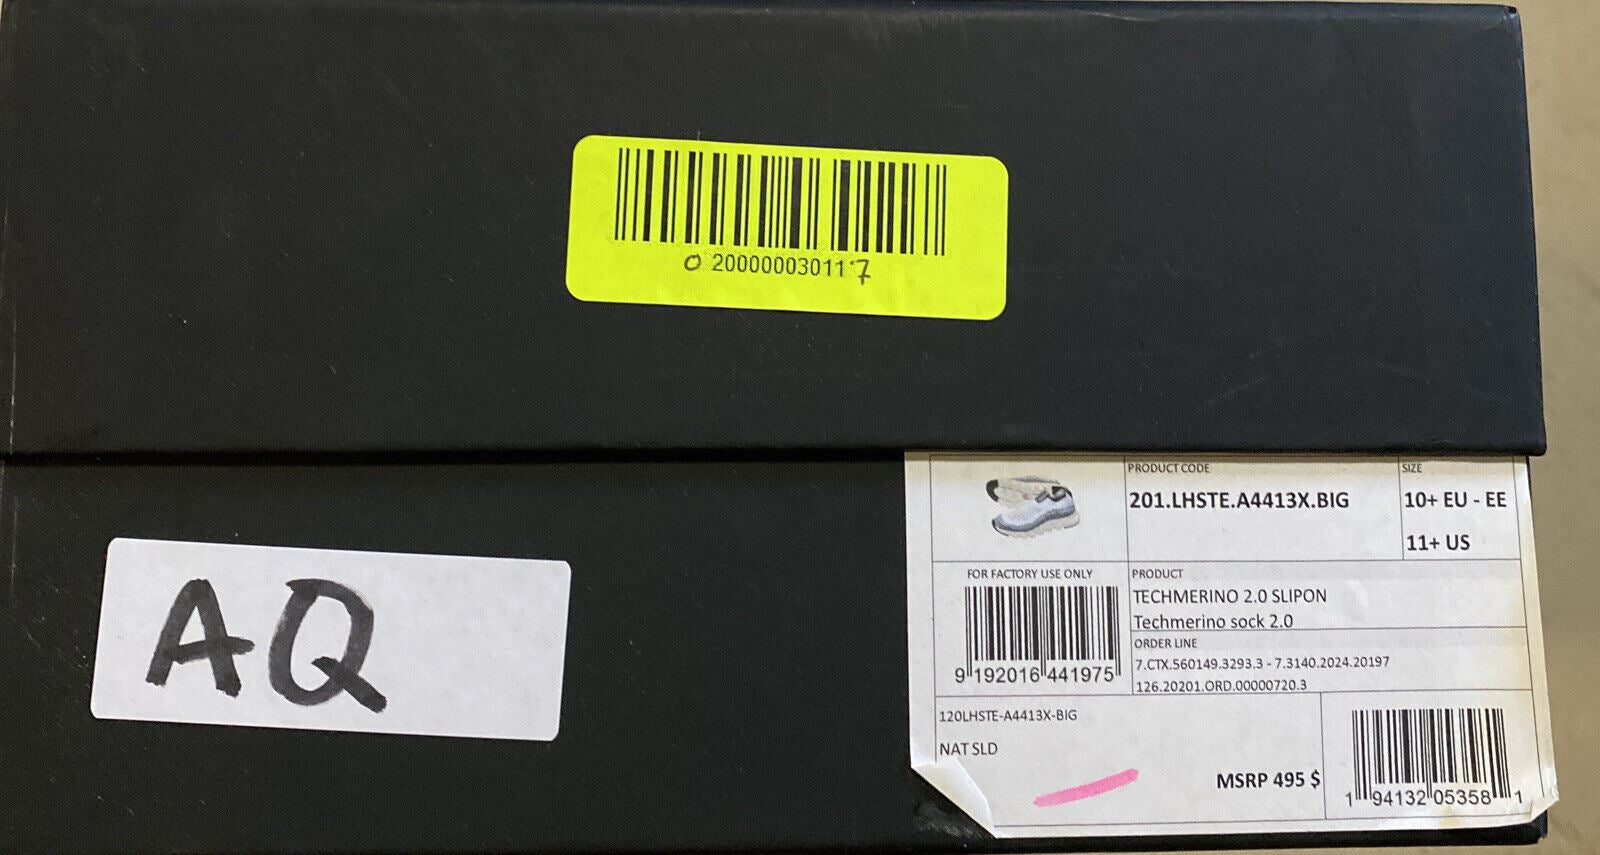 Новые мужские кроссовки Z Zegna, 495 долларов, белые/серые, 11,5 США/44,5 ЕС